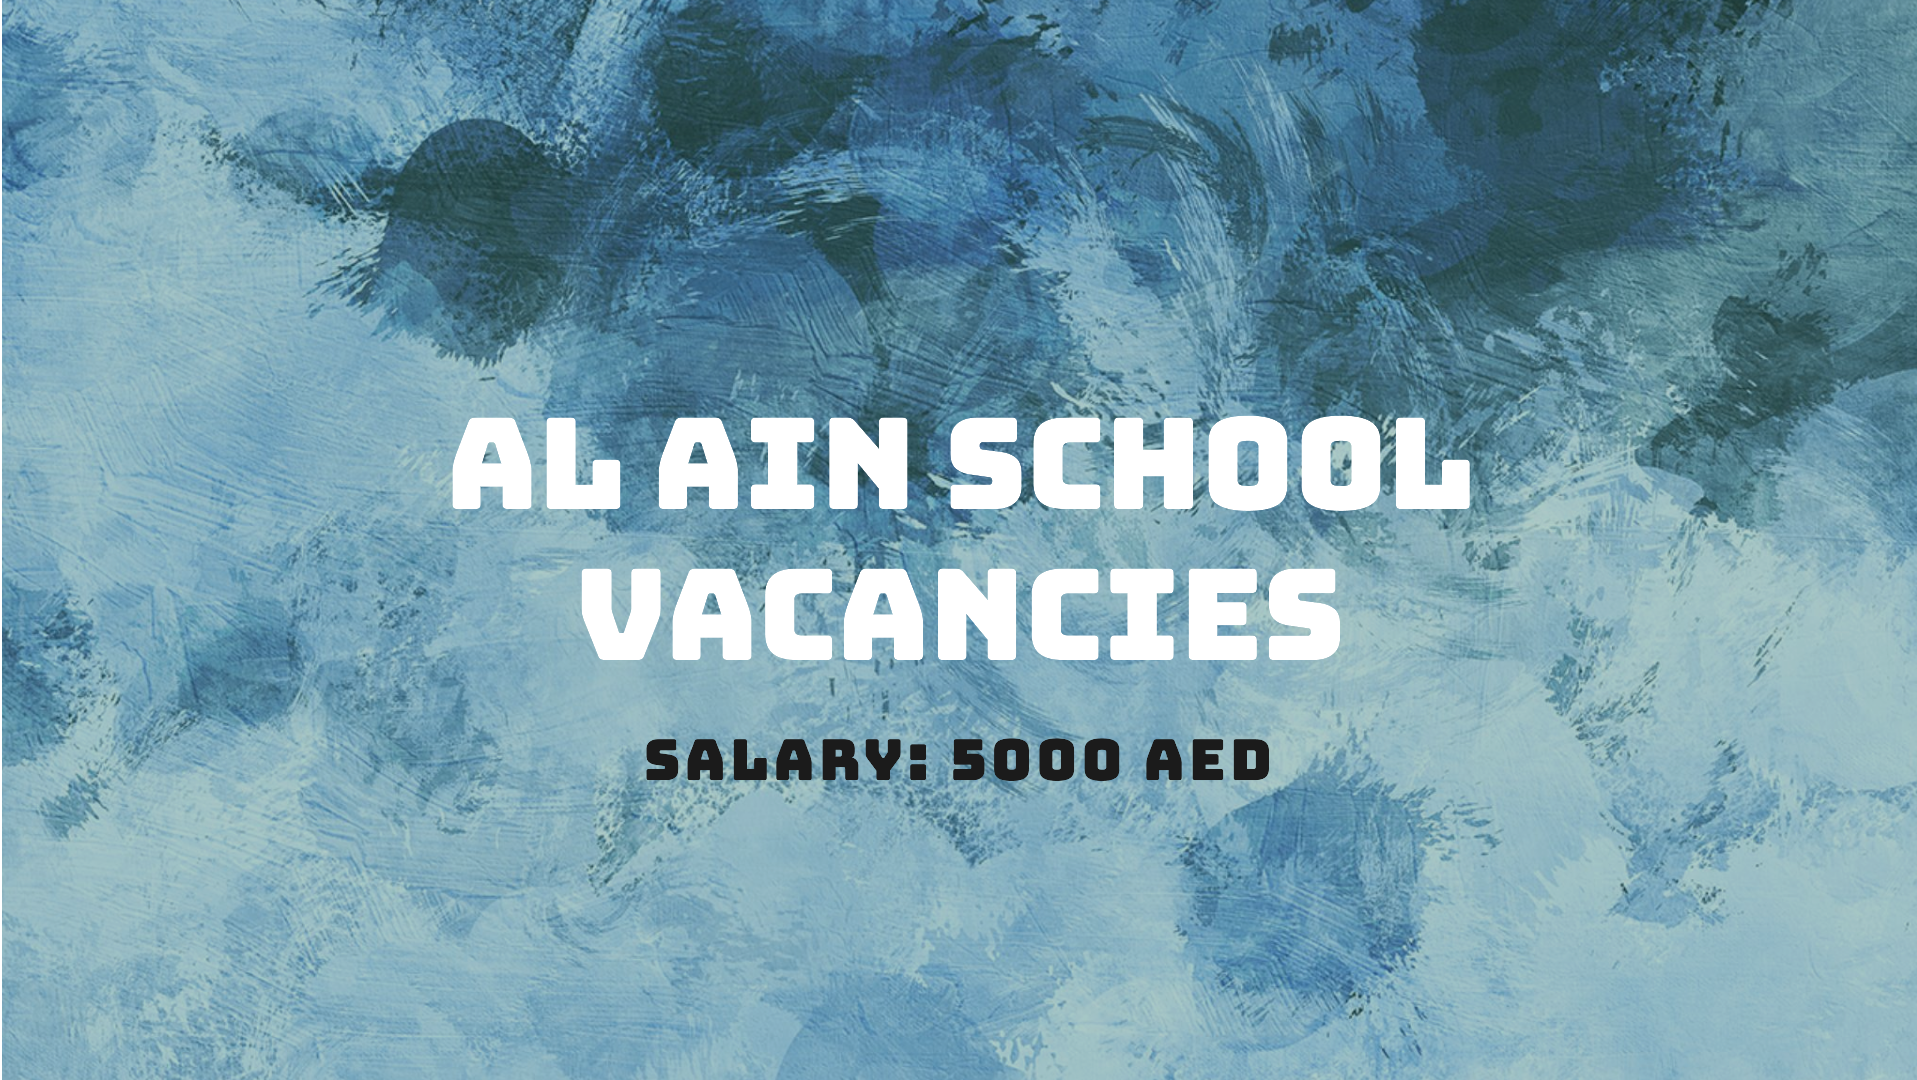 Al Ain school vacancies with salary 5000 AED